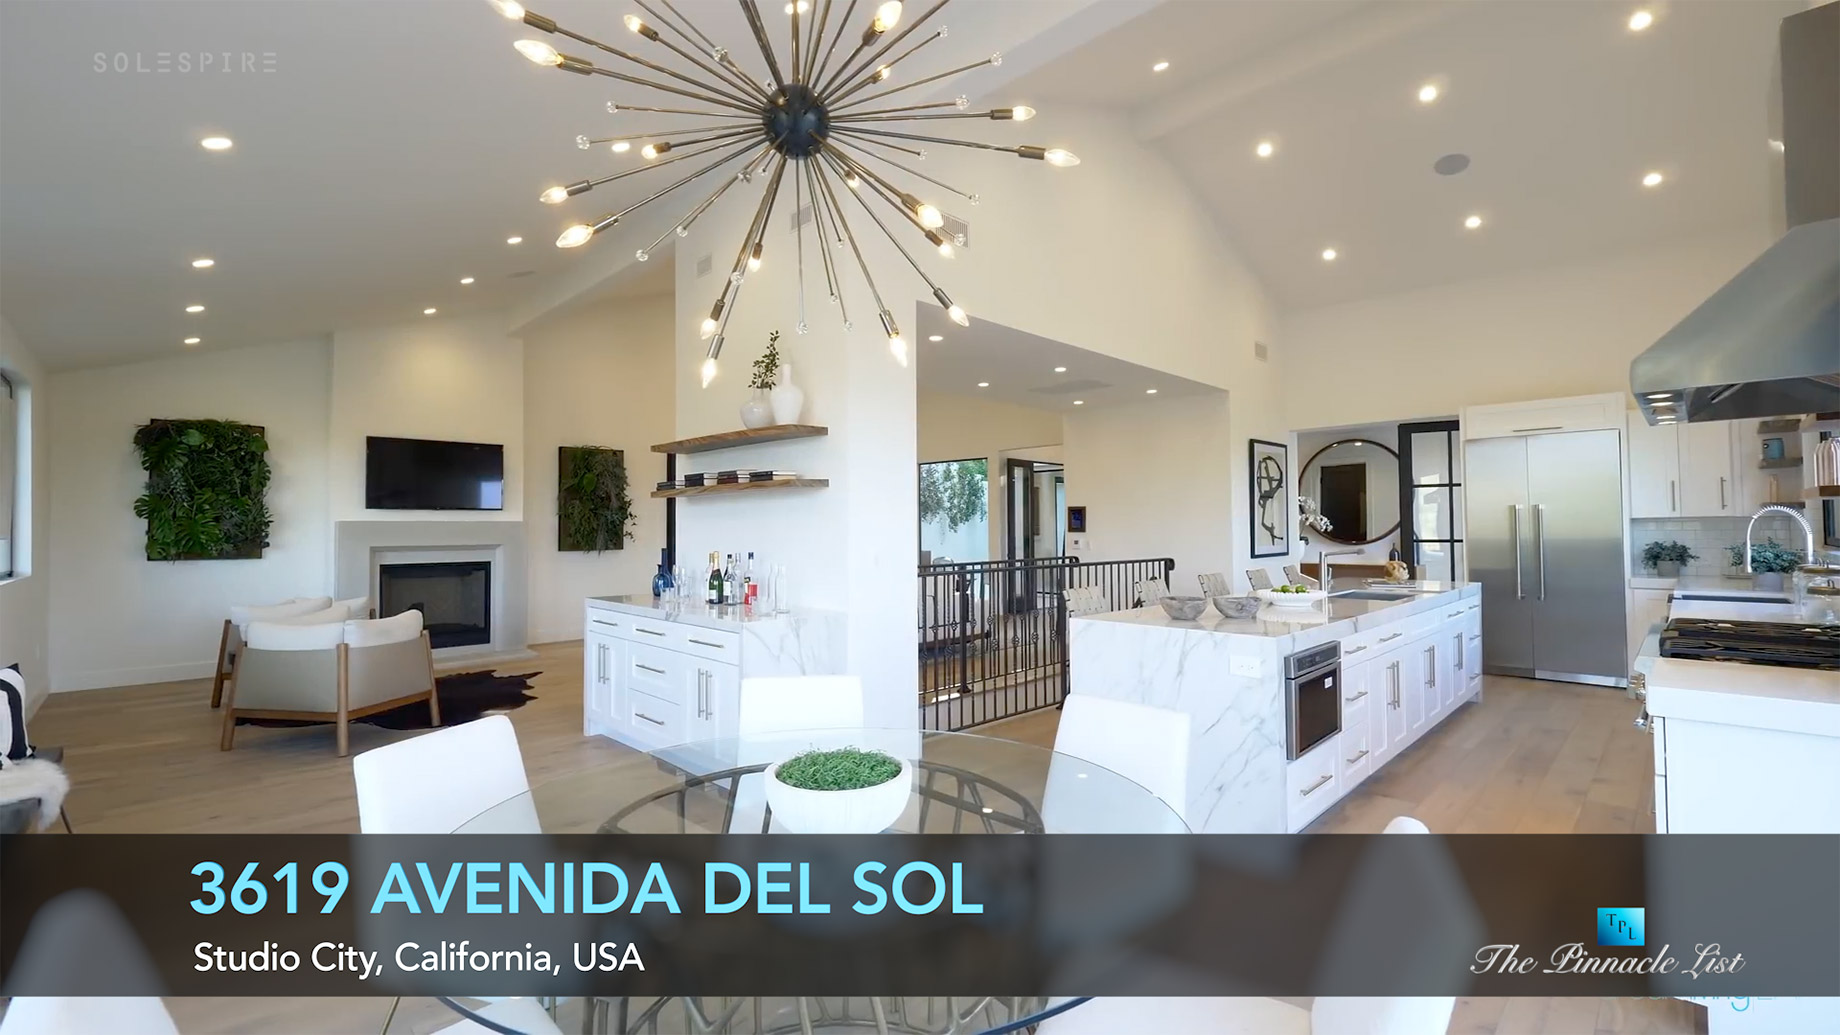 3619 Avenida Del Sol, Studio City, CA, USA - Luxury Real Estate - Video